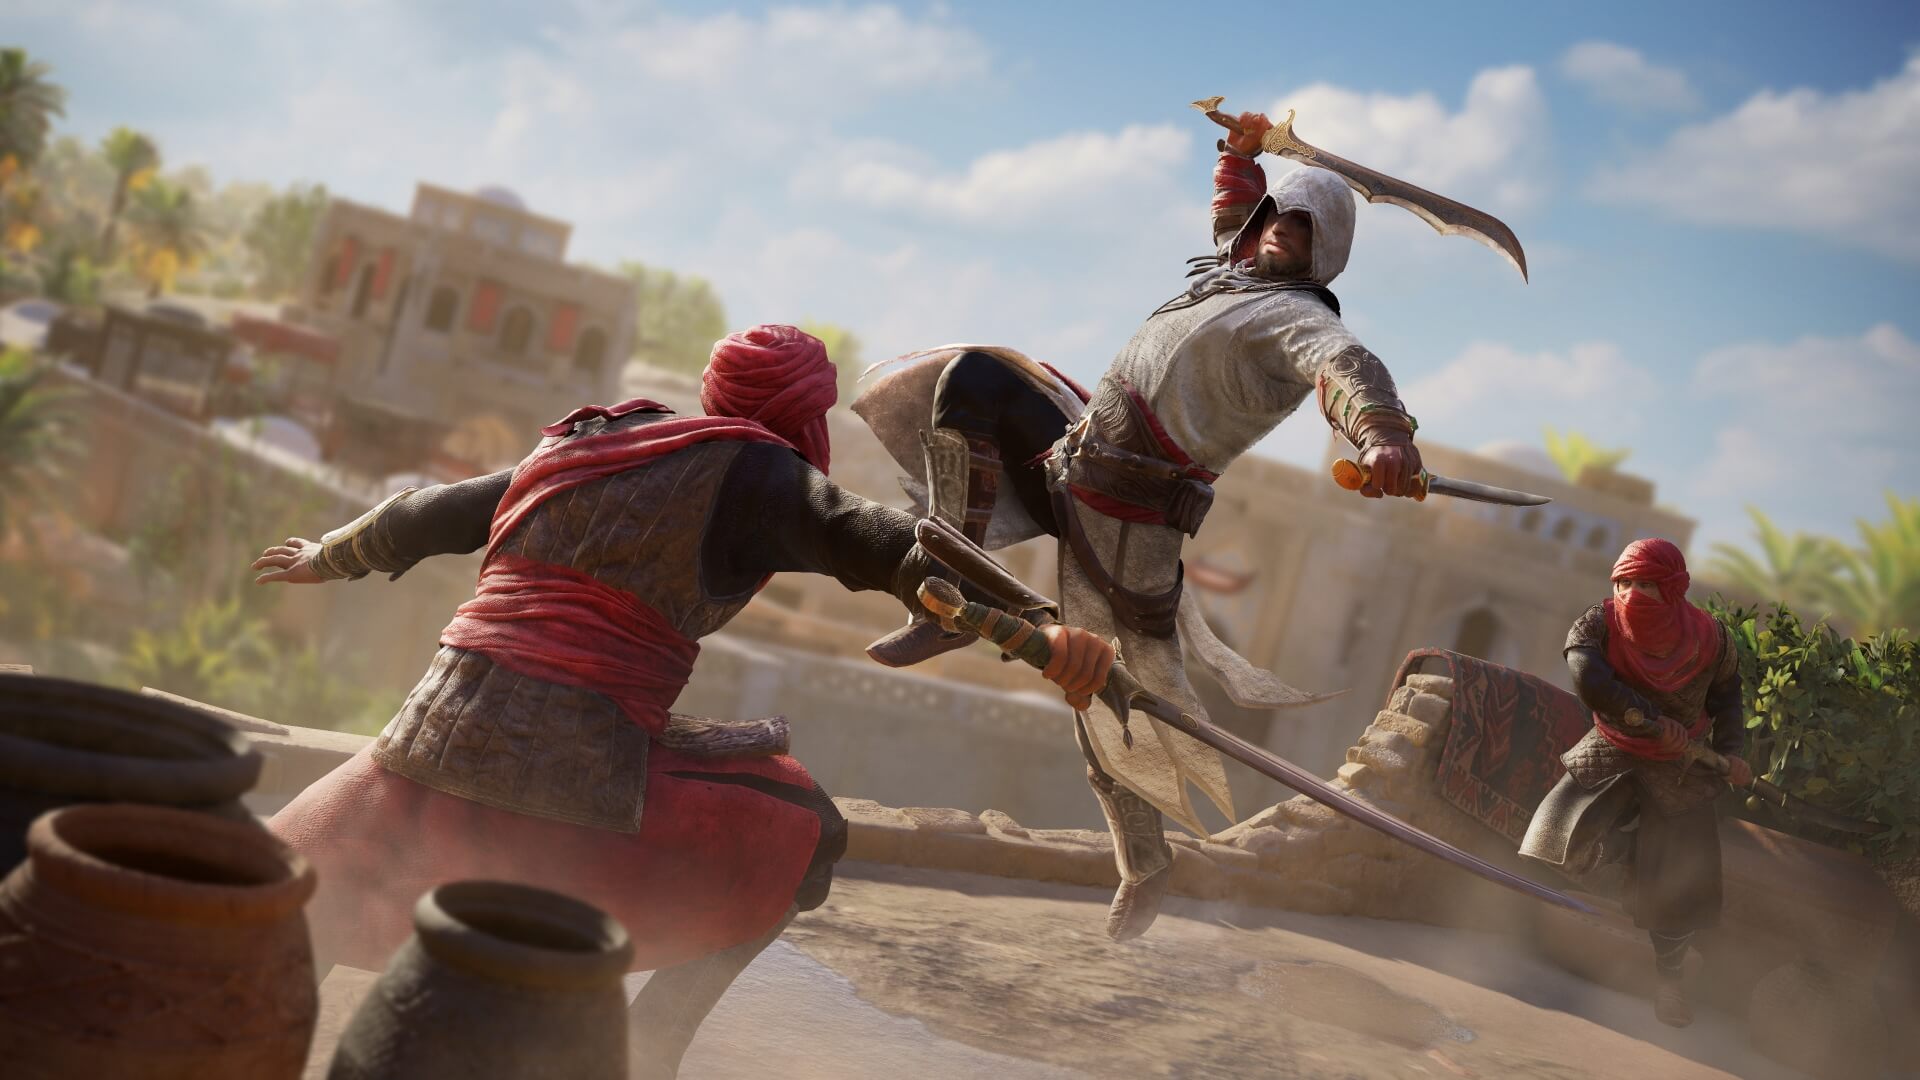 خرید بازی Assassin’s Creed Mirage برای PS4